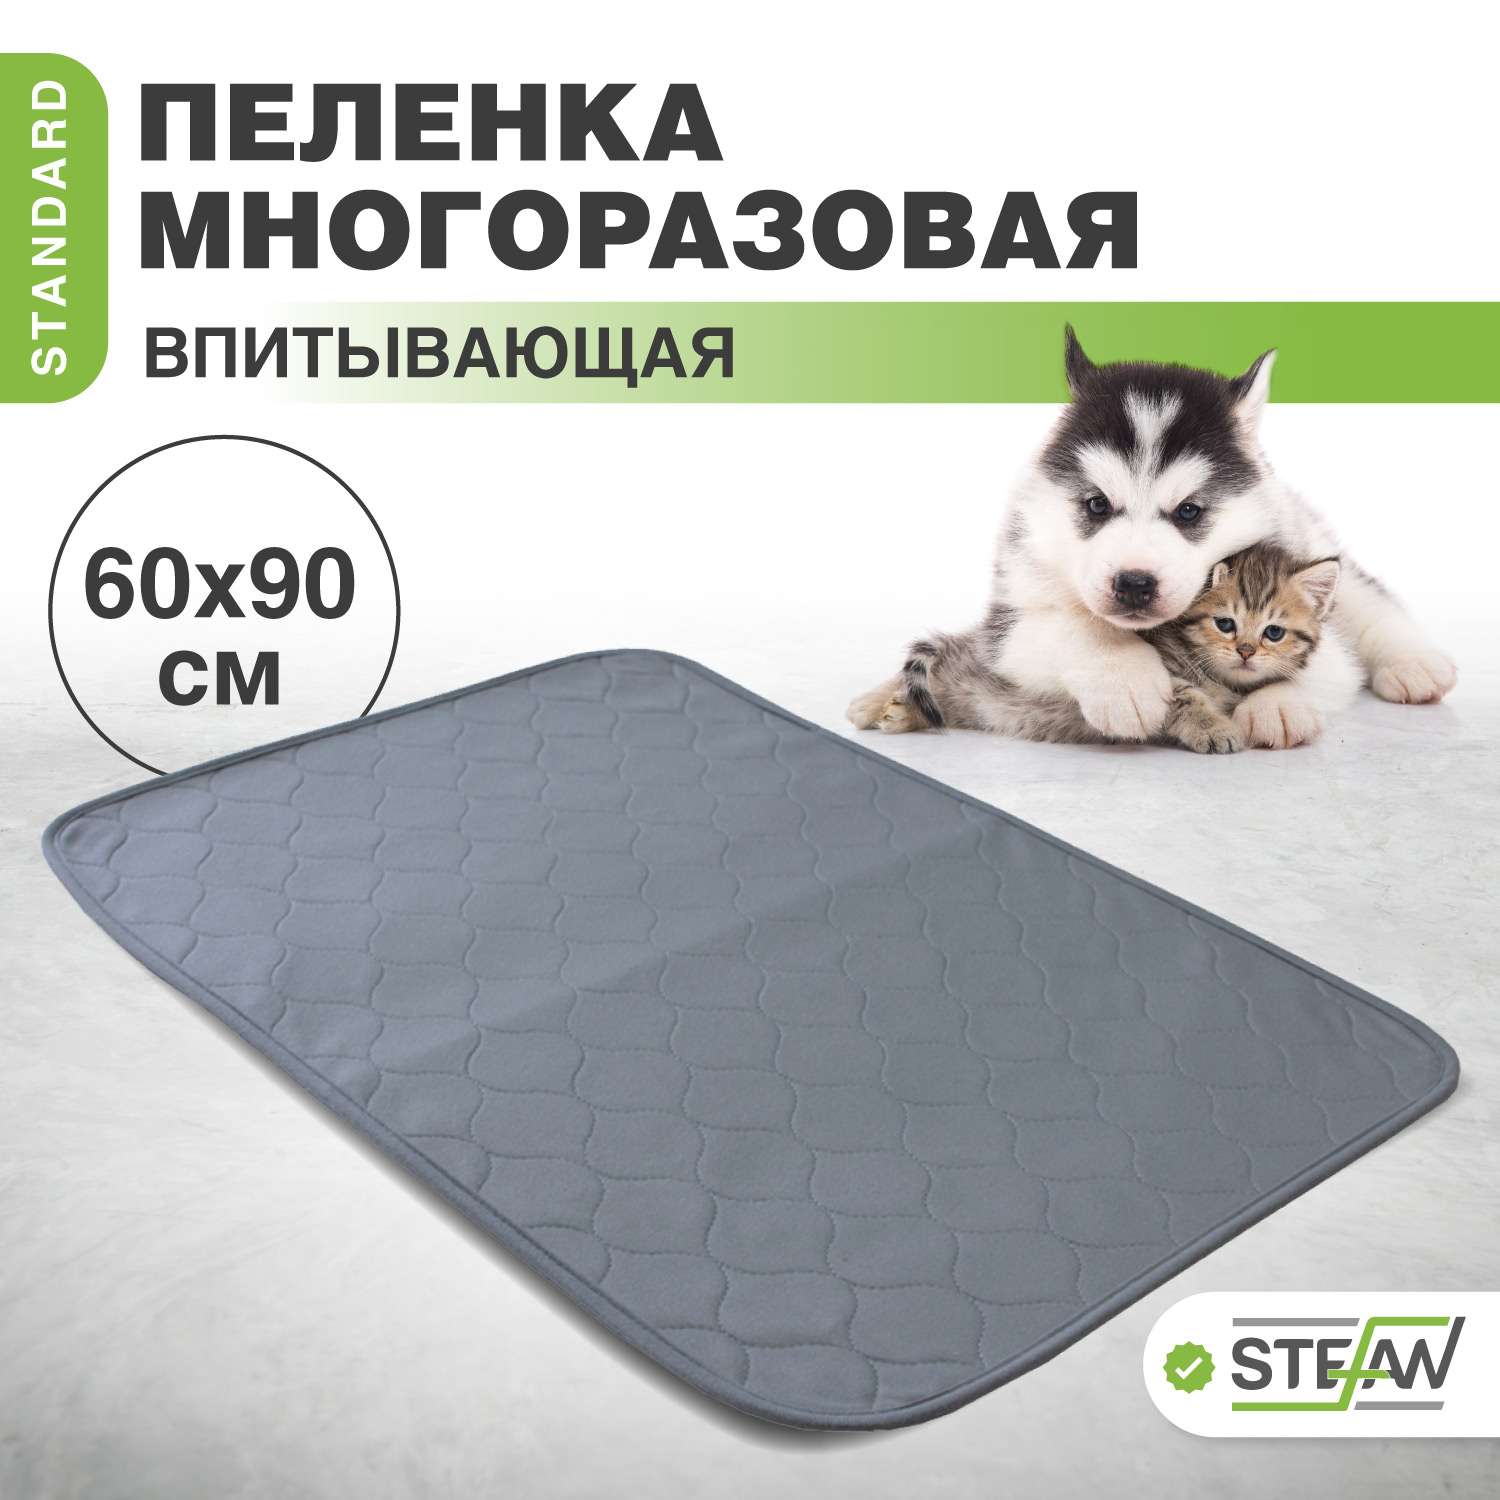 Пеленка для животных Stefan впитывающая многоразовая серая 60х90 см - фото 1